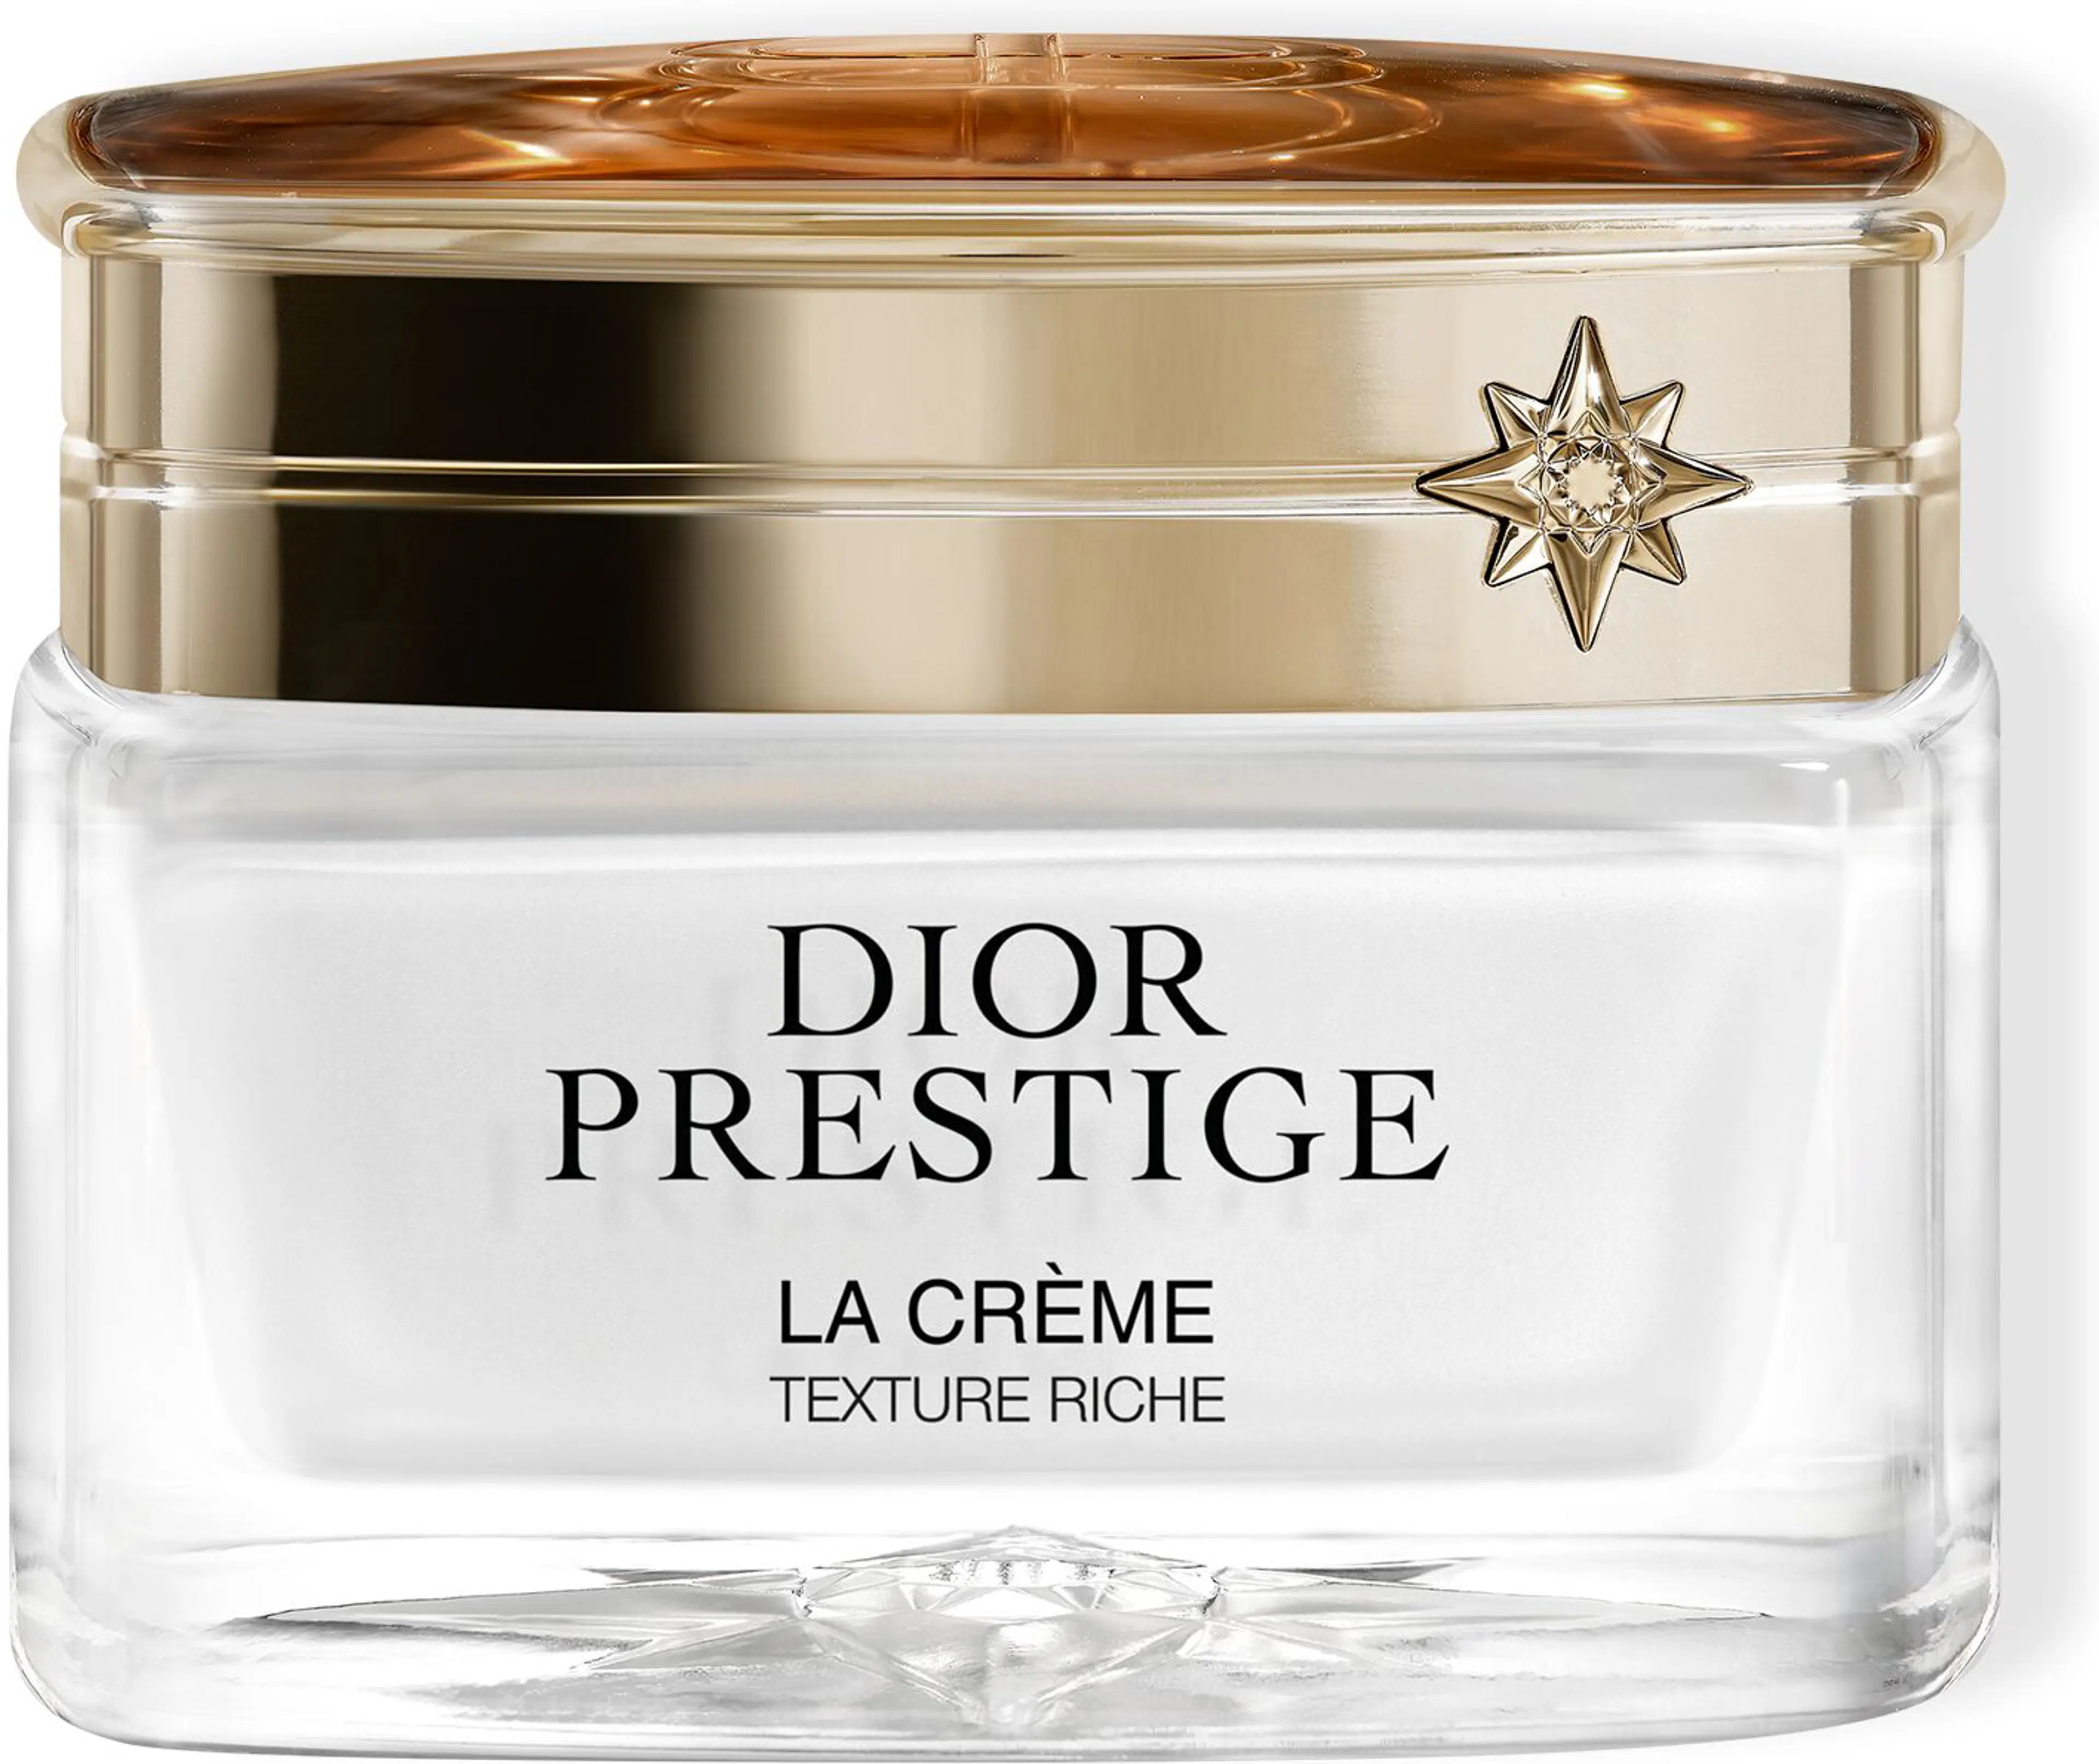 DIOR Prestige La Crème Texture Riche kasvovoide 50 ml